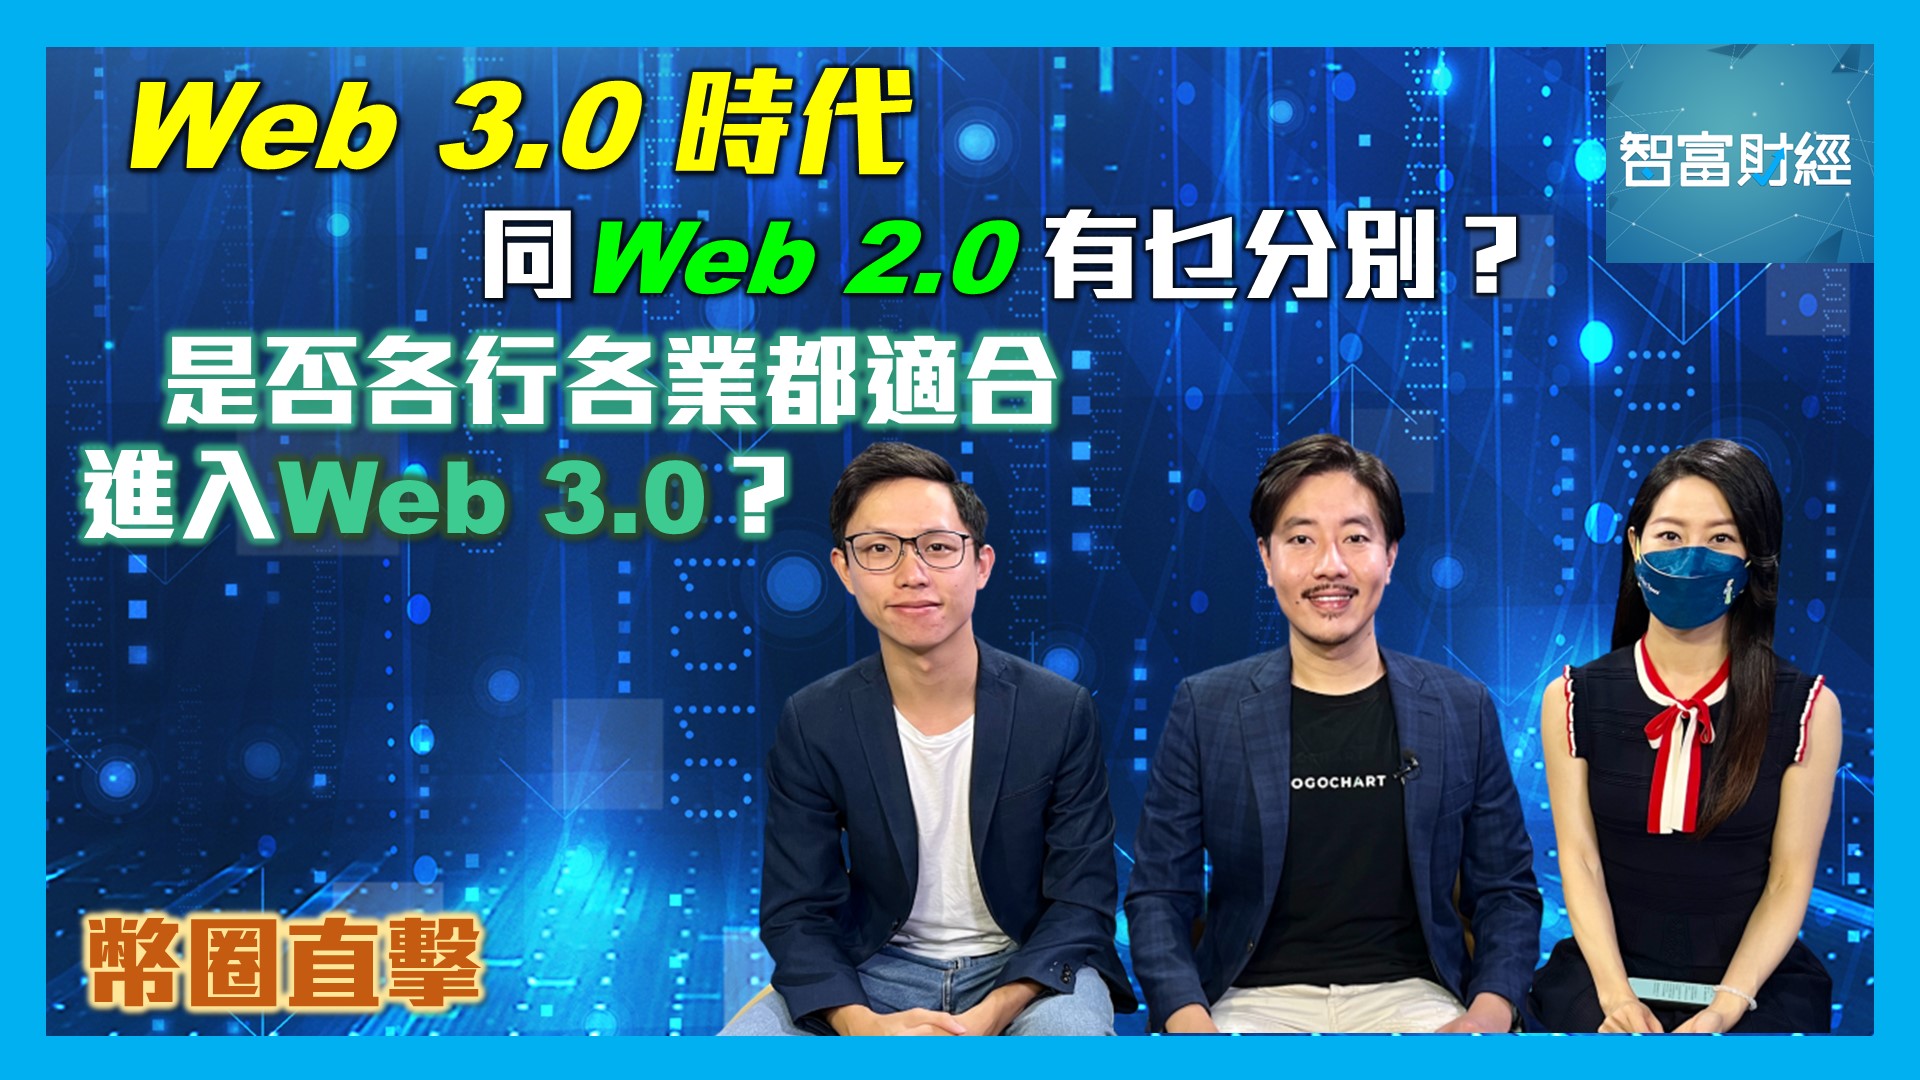 【幣圈直擊】何謂「Web 3.0」？「Web 3.0」＆「Web 2.0」有乜分別？是否各行各業都適合進入「Web 3.0」？